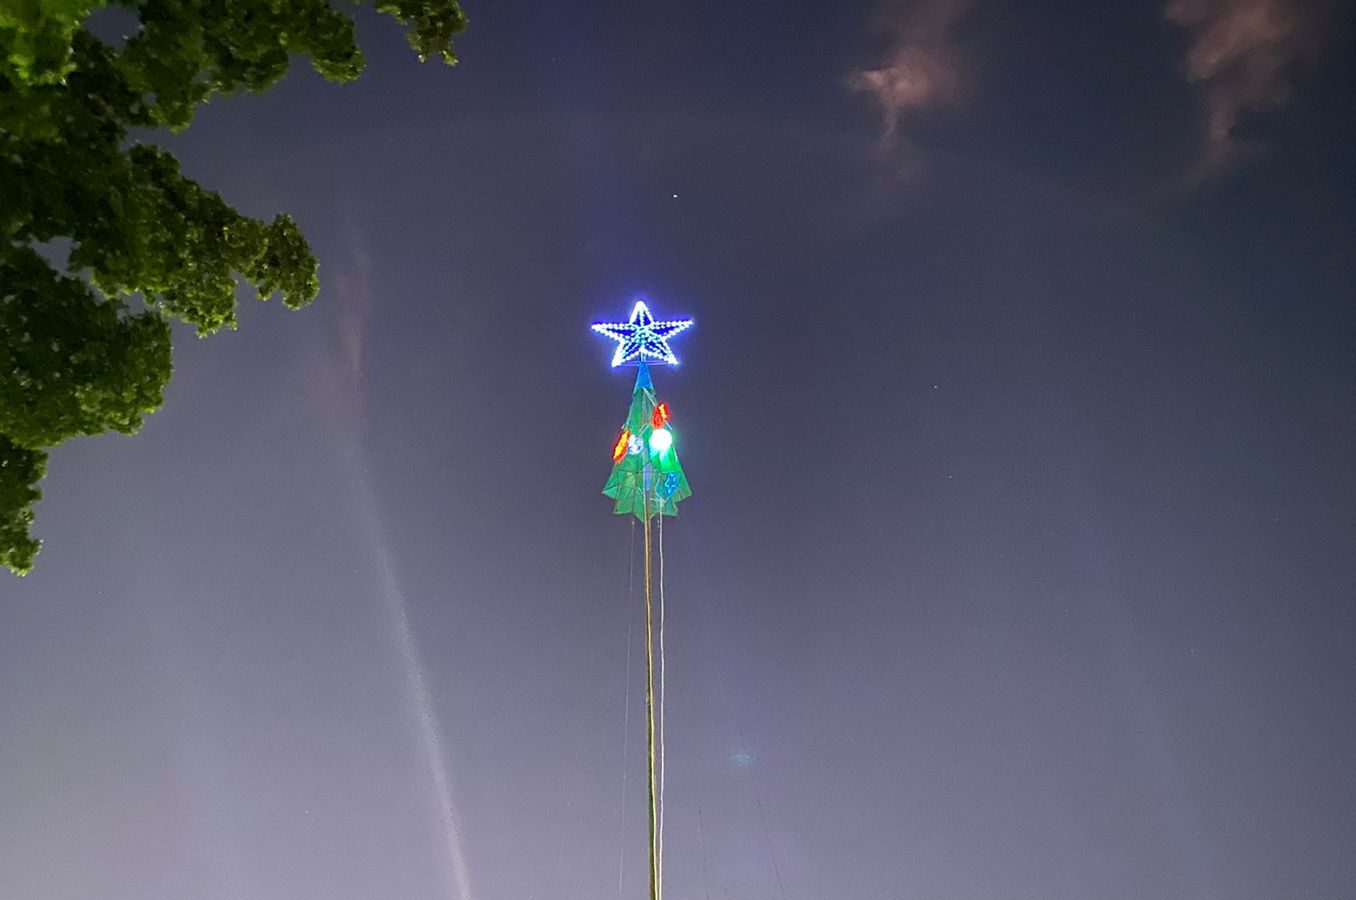 ¡La estrella de Belén ya ilumina Los Mochis! Autoridades de Ahome encienden estructura navideña